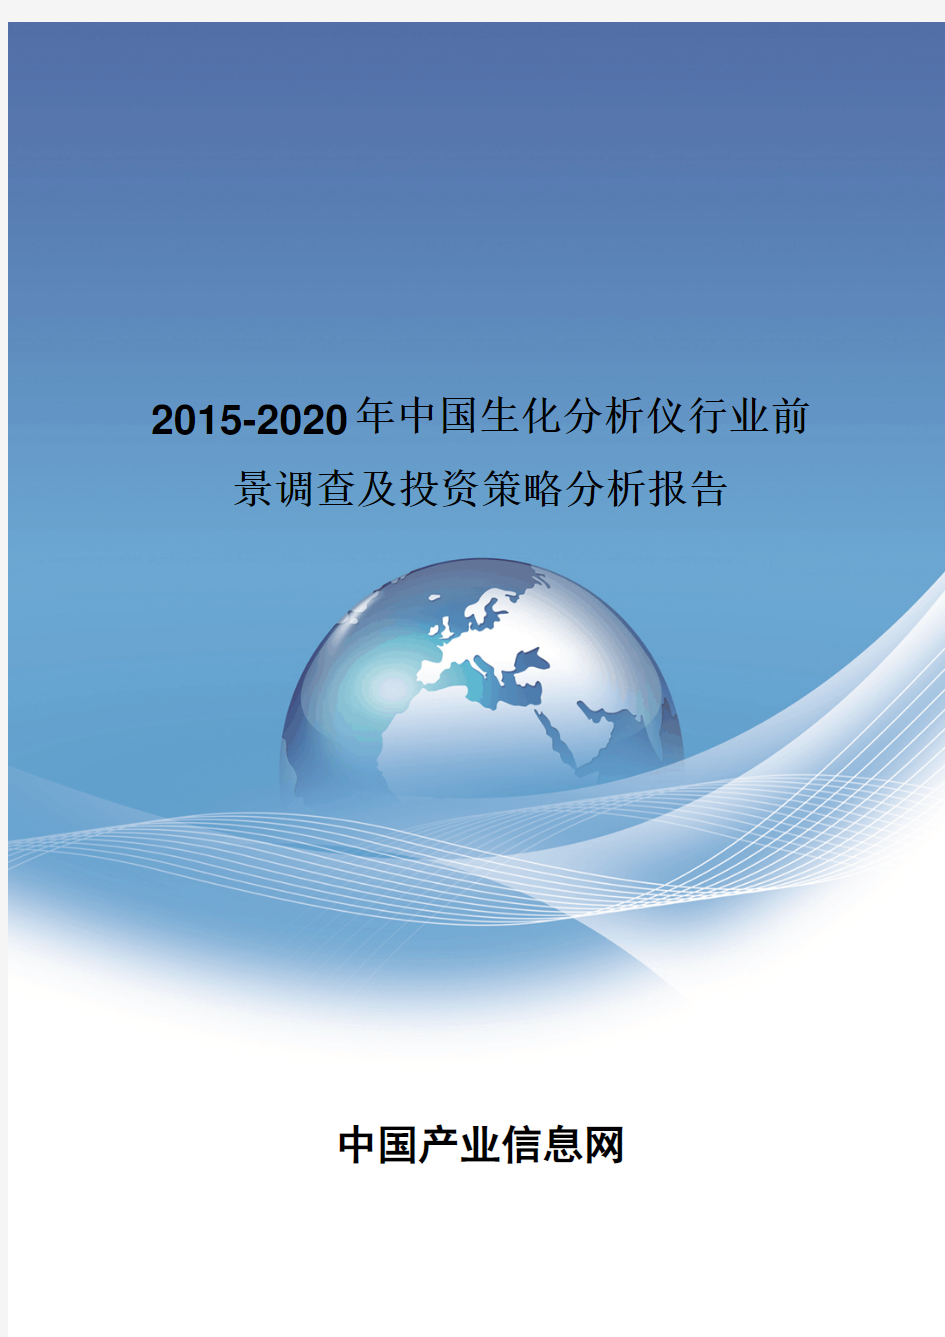 2015-2020年中国生化分析仪行业投资策略报告